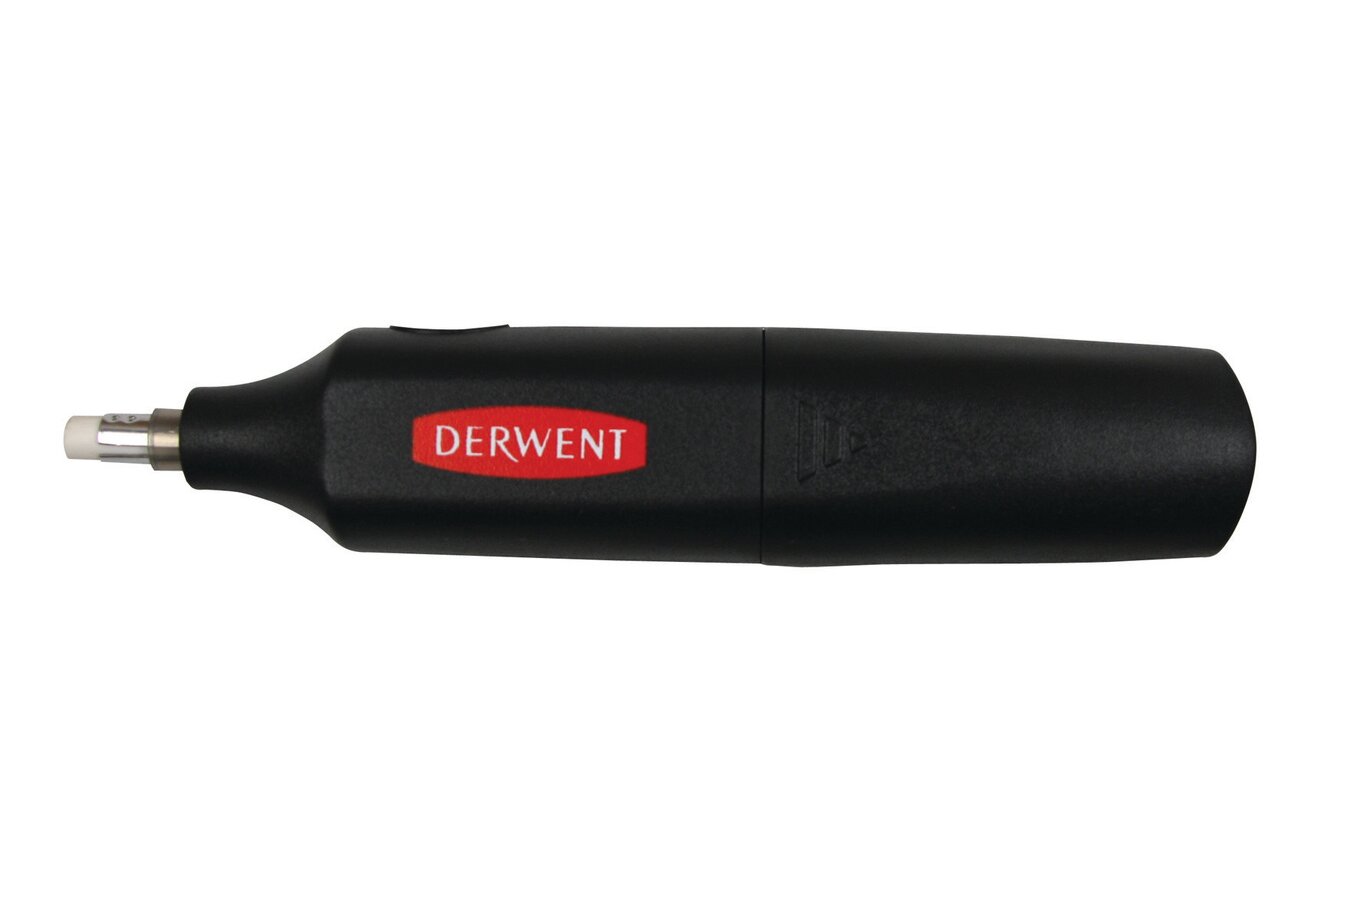 DERWENT - Stylo-gomme électrique USB